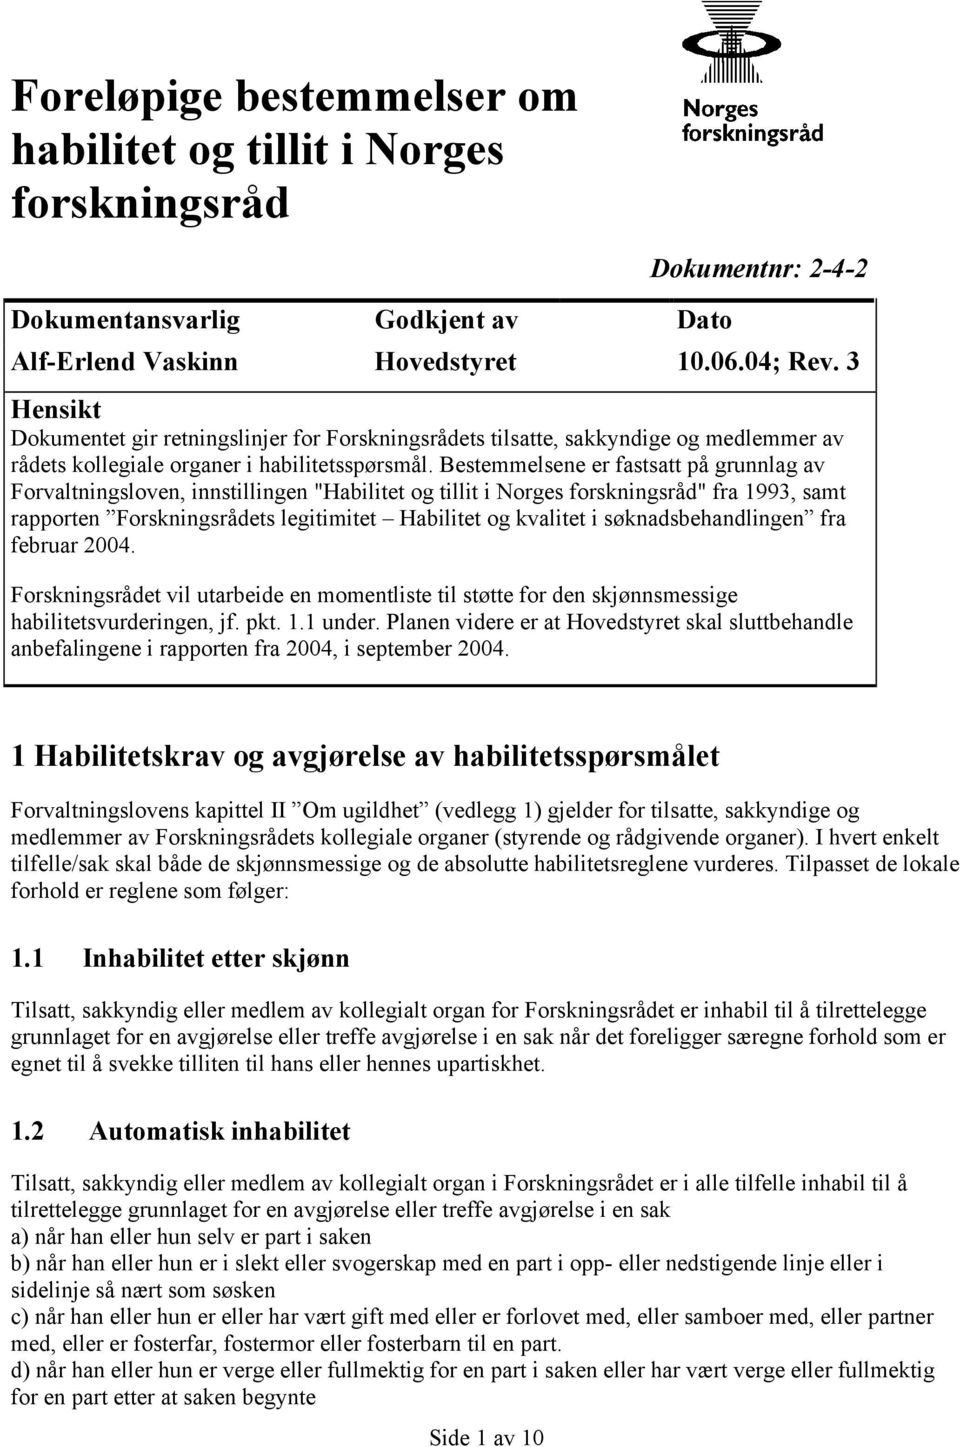 Bestemmelsene er fastsatt på grunnlag av Forvaltningsloven, innstillingen "Habilitet og tillit i Norges forskningsråd" fra 1993, samt rapporten Forskningsrådets legitimitet Habilitet og kvalitet i